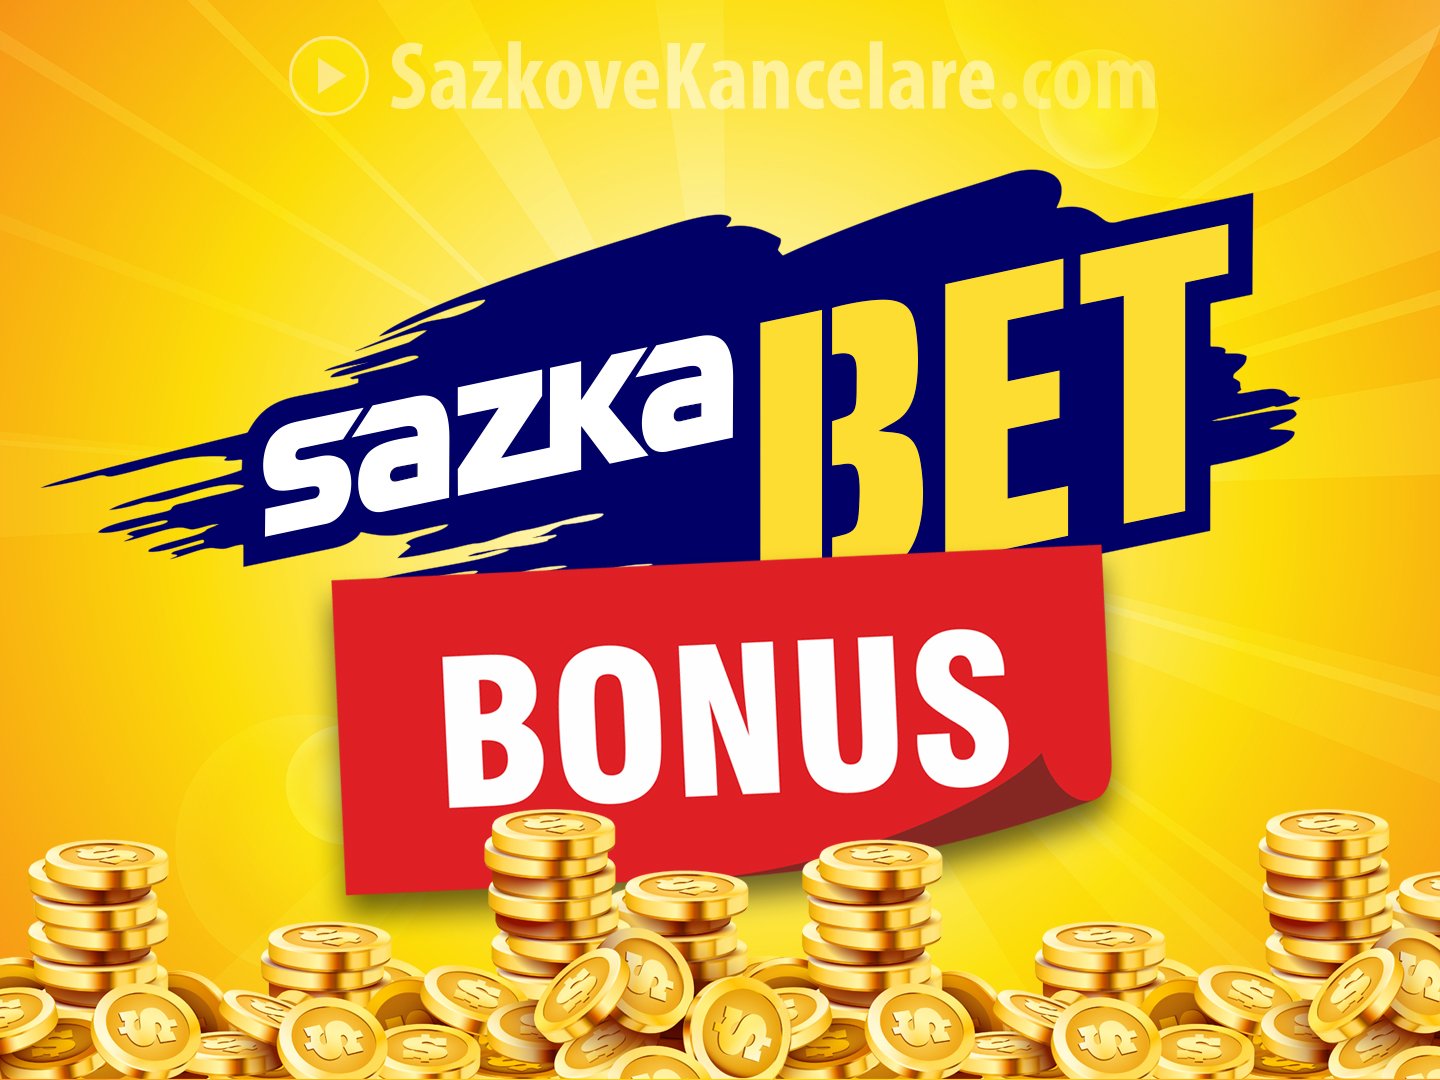 sazkabet-bonusy-p-ehled-jak-z-skat-vstupn-bonus-10-000-k